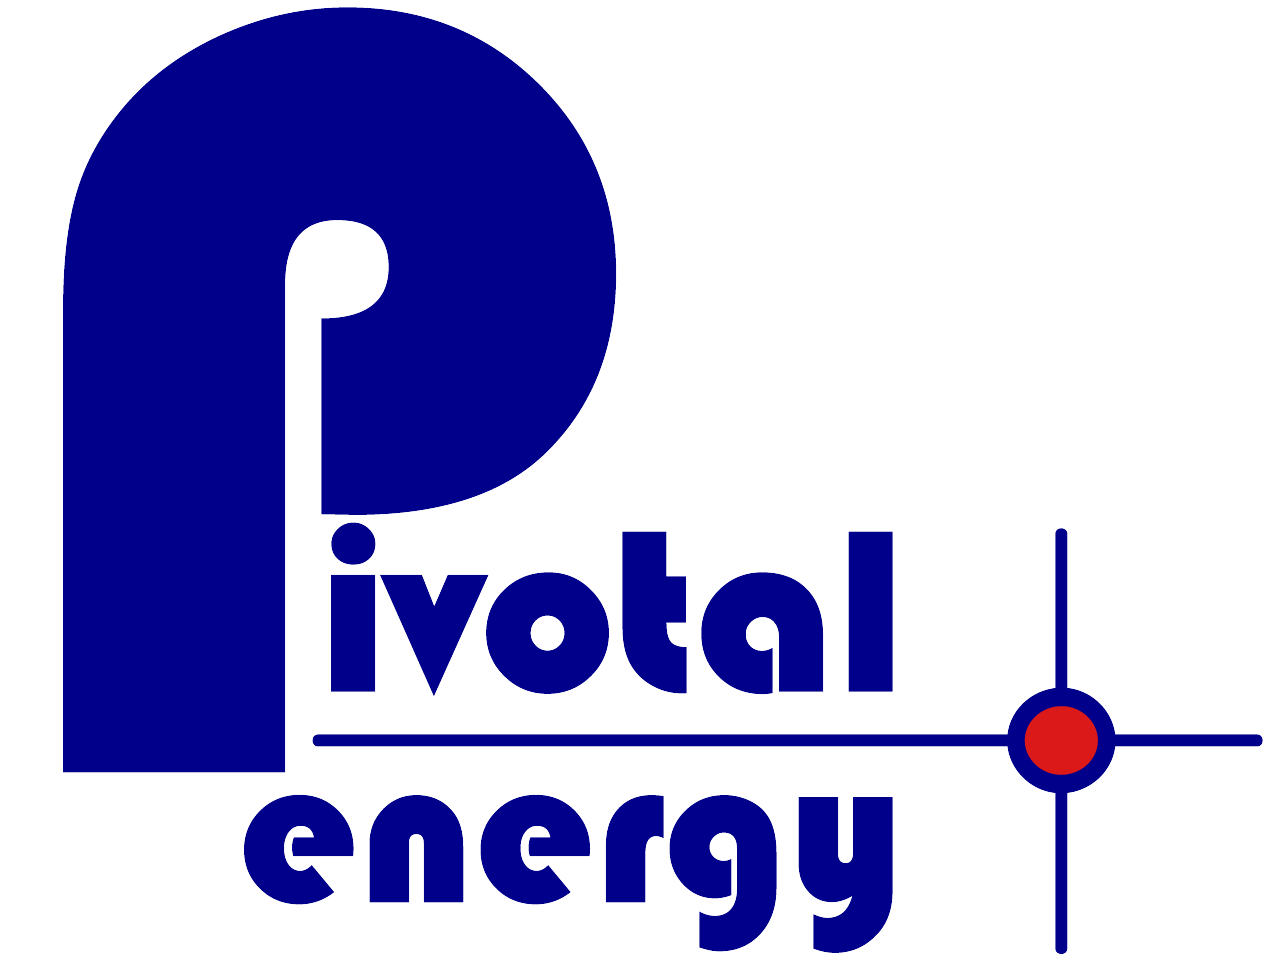 Pivotal's original logo